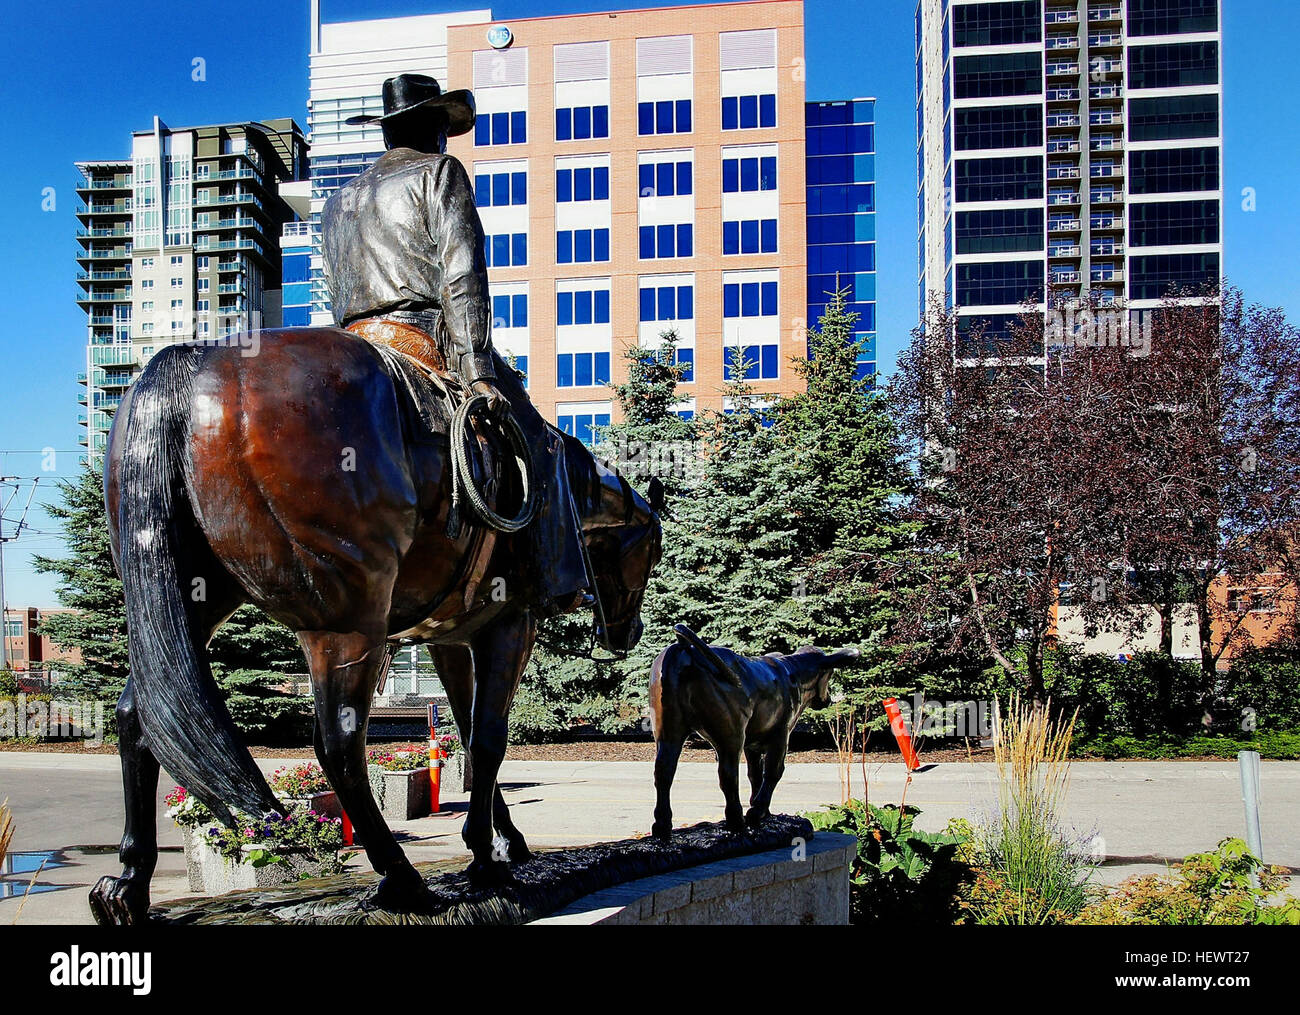 Unzählige Rodeos finden statt in der gesamten Provinz. Der Großvater von allen ist die jährliche Calgary Stampede, die reichsten Rodeo-Wettbewerb der Welt mit mehr als $ 2 Millionen an Preisgeldern in Calf roping, Steer wrestling, Bronco und Bullenreiten und Faßlaufen gewonnen werden. Ach und nicht zu vergessen die berühmten Chuckwagon Rennen. Es gibt nichts im Vergleich zu den Nervenkitzel der Pferde, Wagen und Vorreiter donnern auf der Zielgeraden, Schmutz, fliegen, den Boden buchstäblich unter den Füßen schütteln. Stockfoto